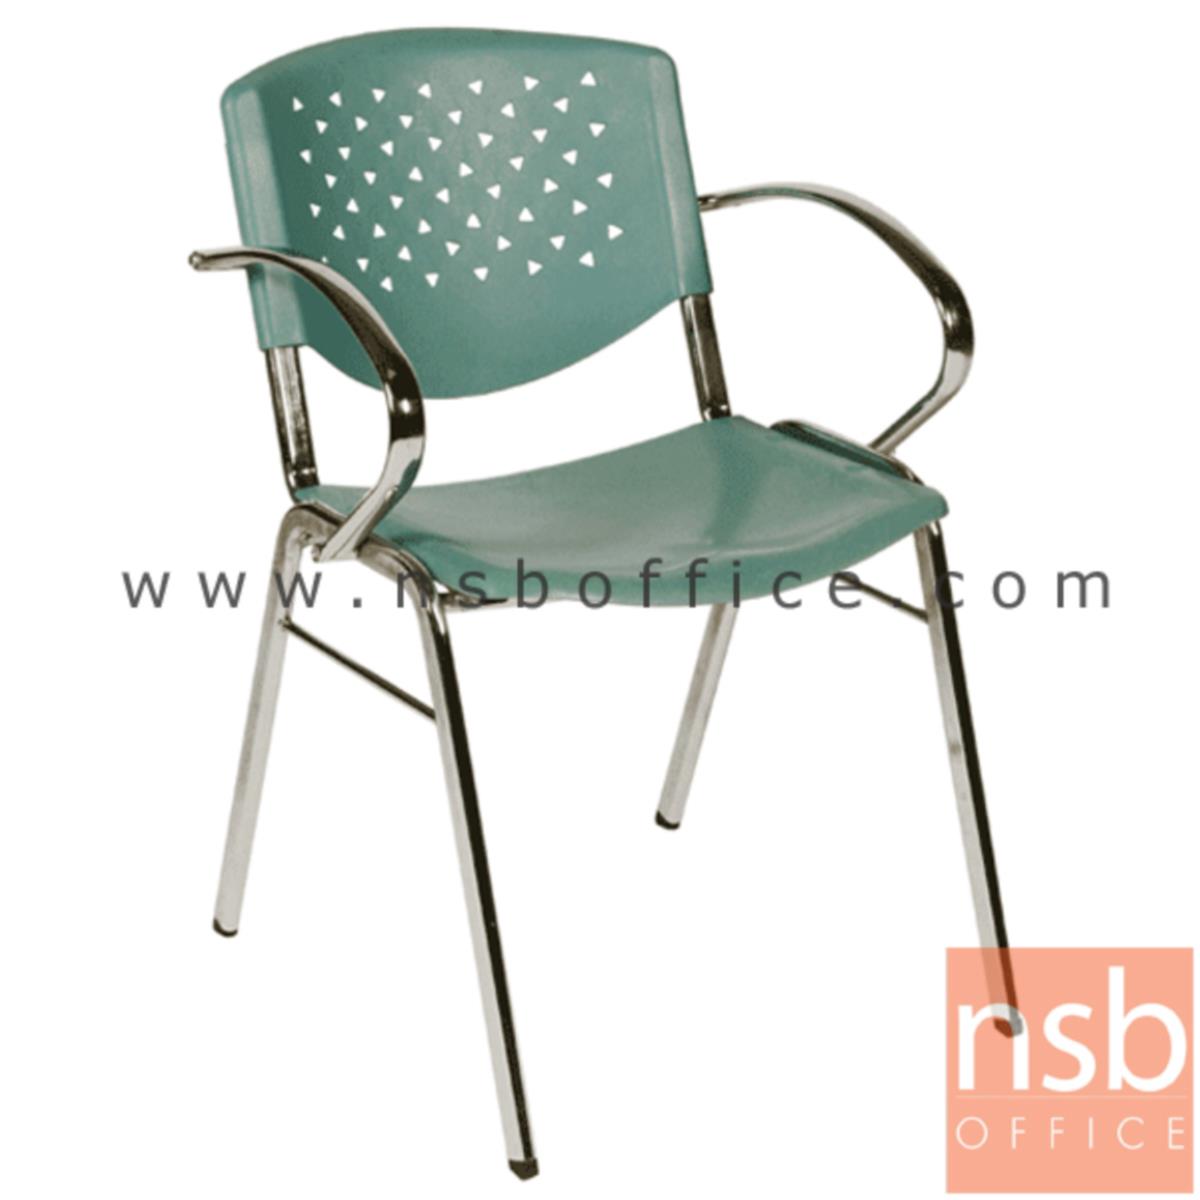 B05A043:เก้าอี้อเนกประสงค์เฟรมโพลี่ รุ่น A136-526  ขาเหล็กชุบโครเมี่ยม